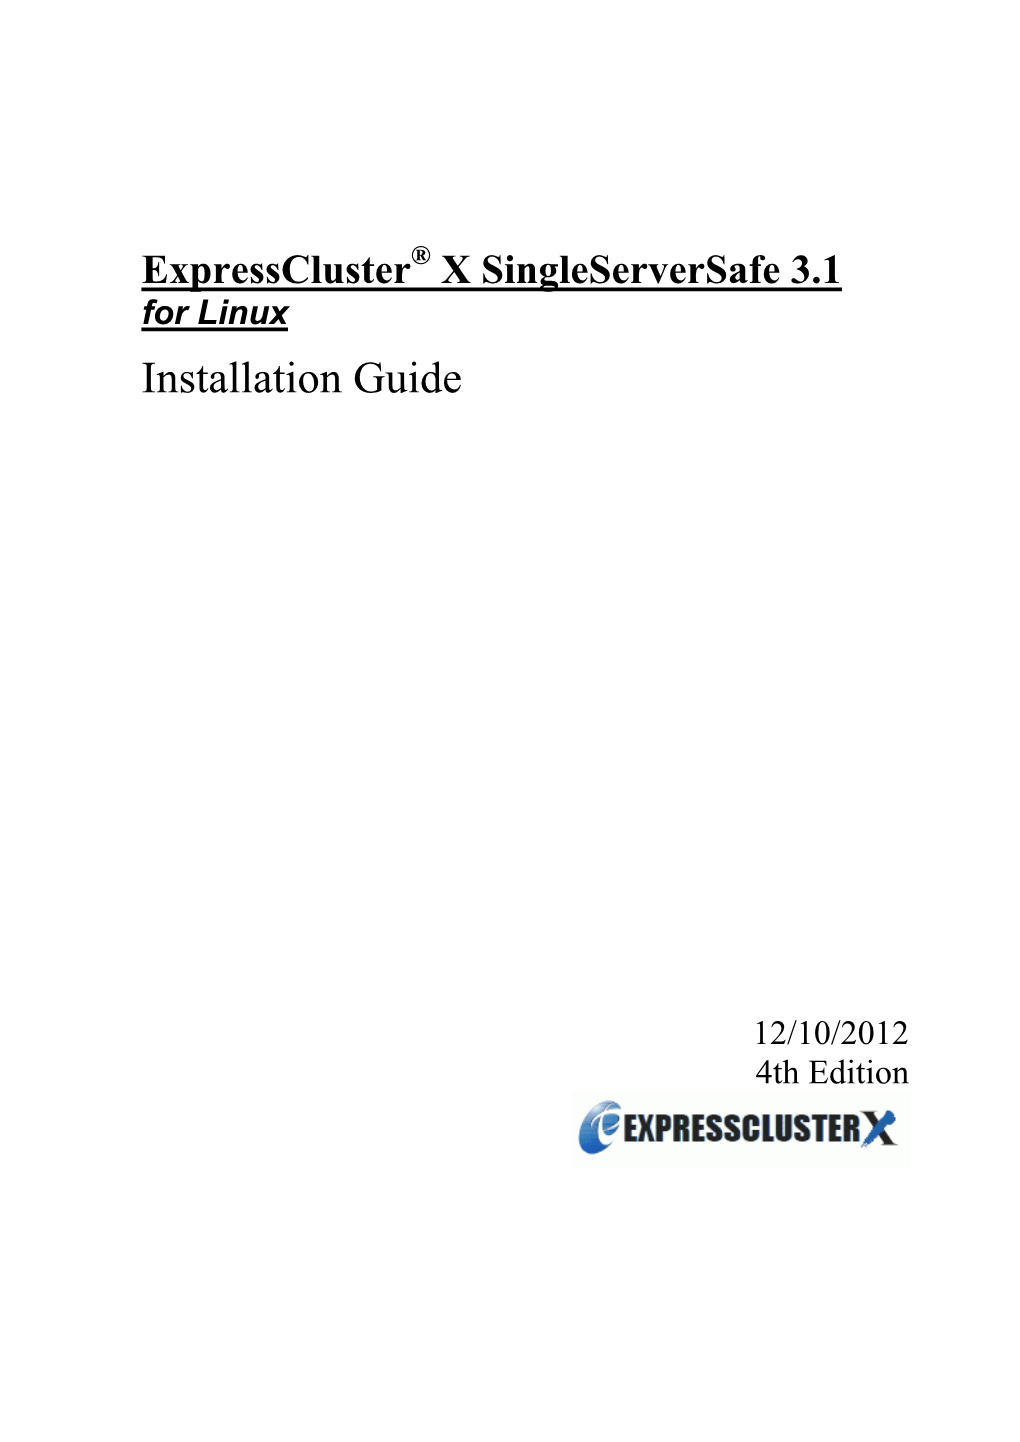 Expresscluster X Singleserversafe 3.1 for Linux Installation Guide 14 What Is Expresscluster X Singleserversafe?